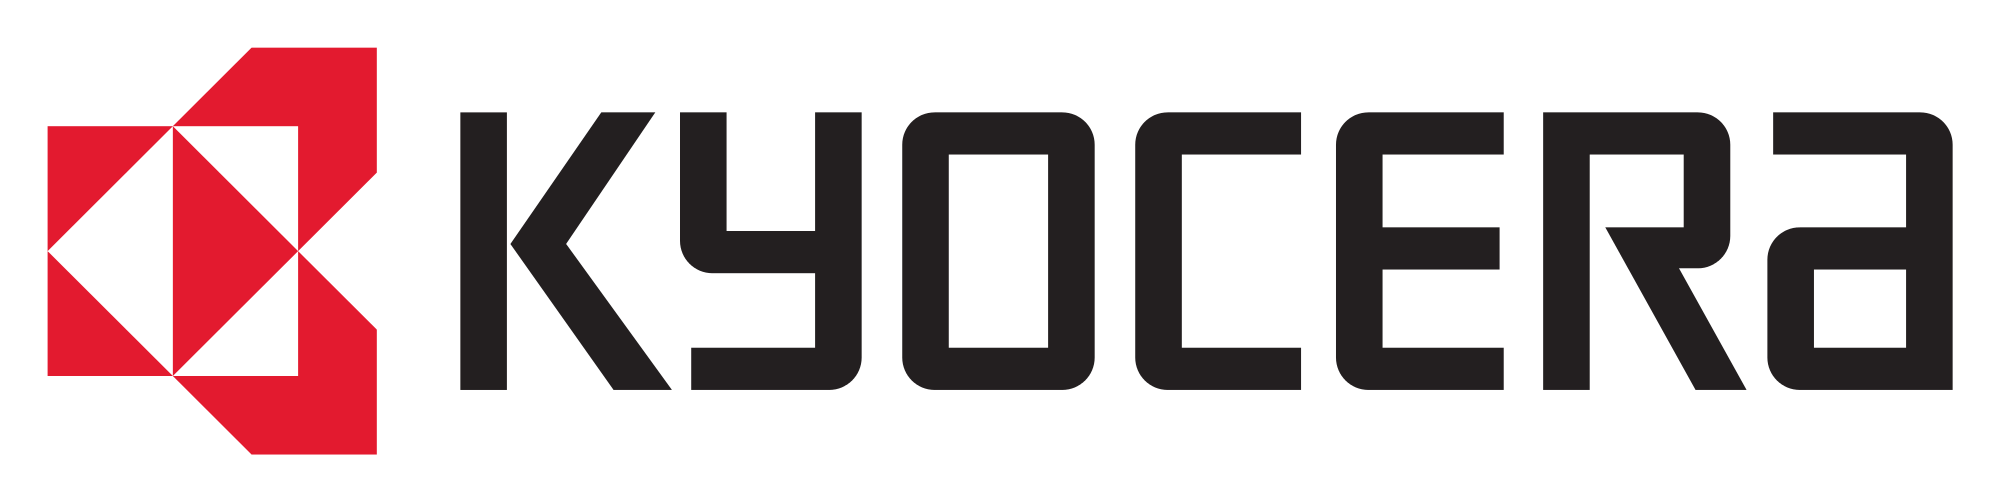 2000px-Kyocera_logo.svg.png